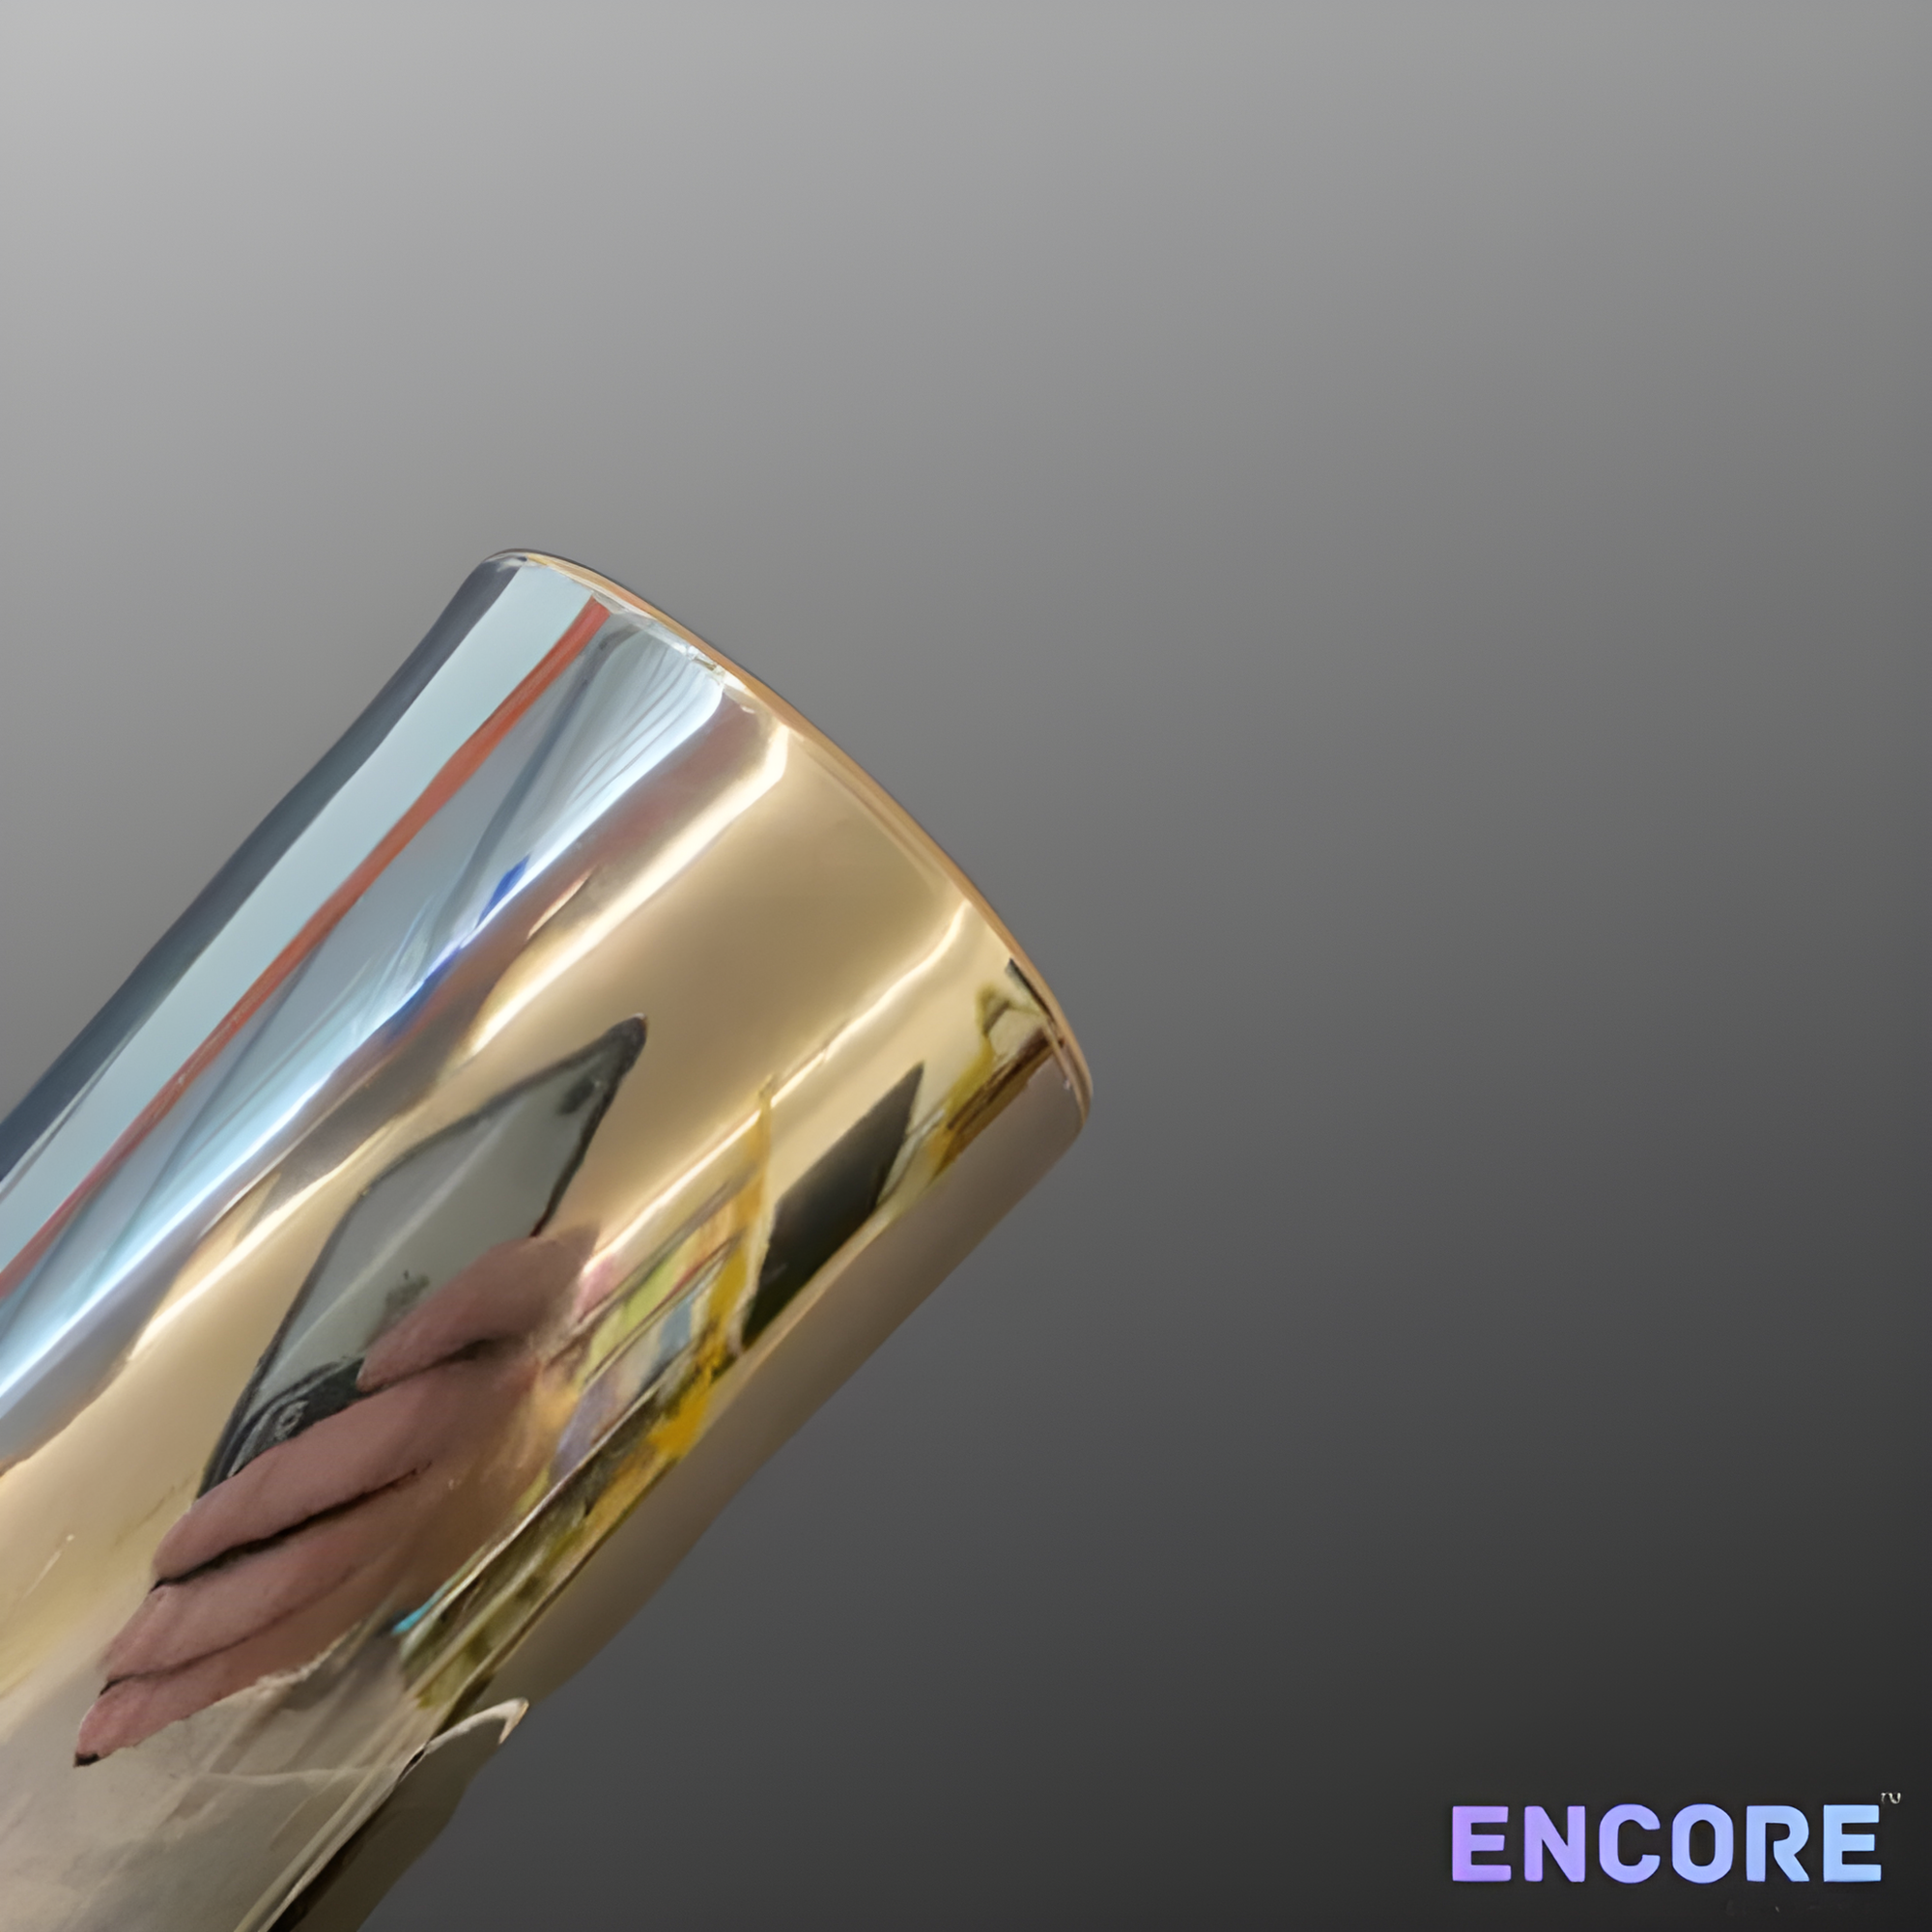 Vinilo adhesivo cromado plateado espejo Encore® EFX21